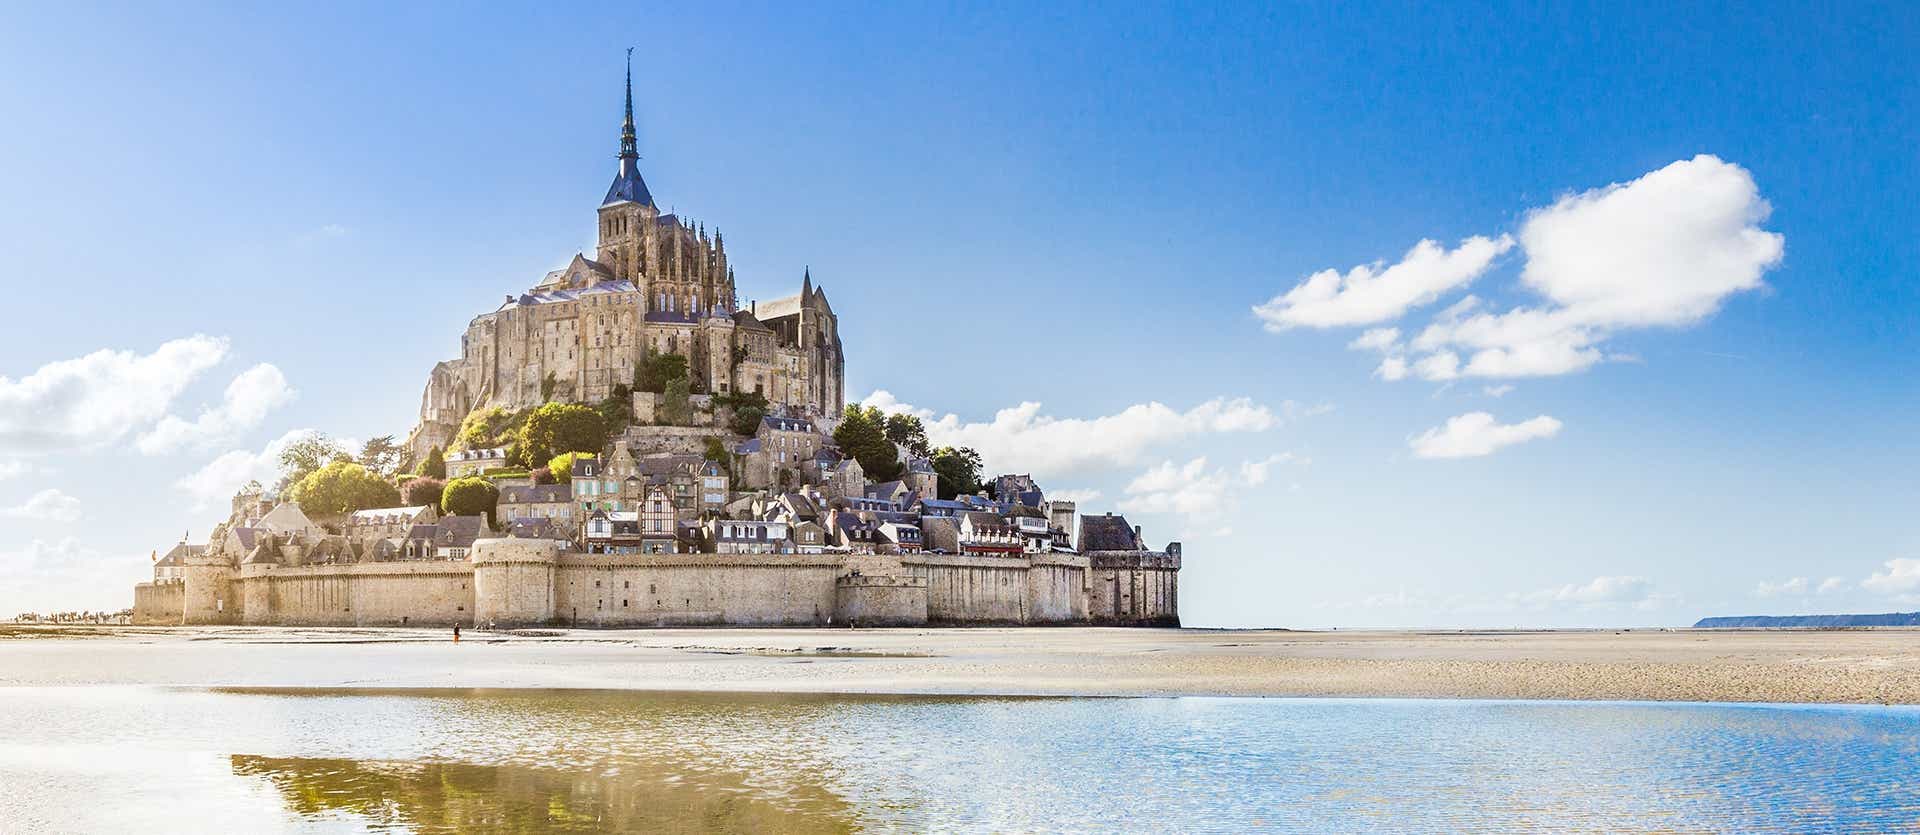 Mount Saint Michel <span class="iconos separador"></span> Normandy